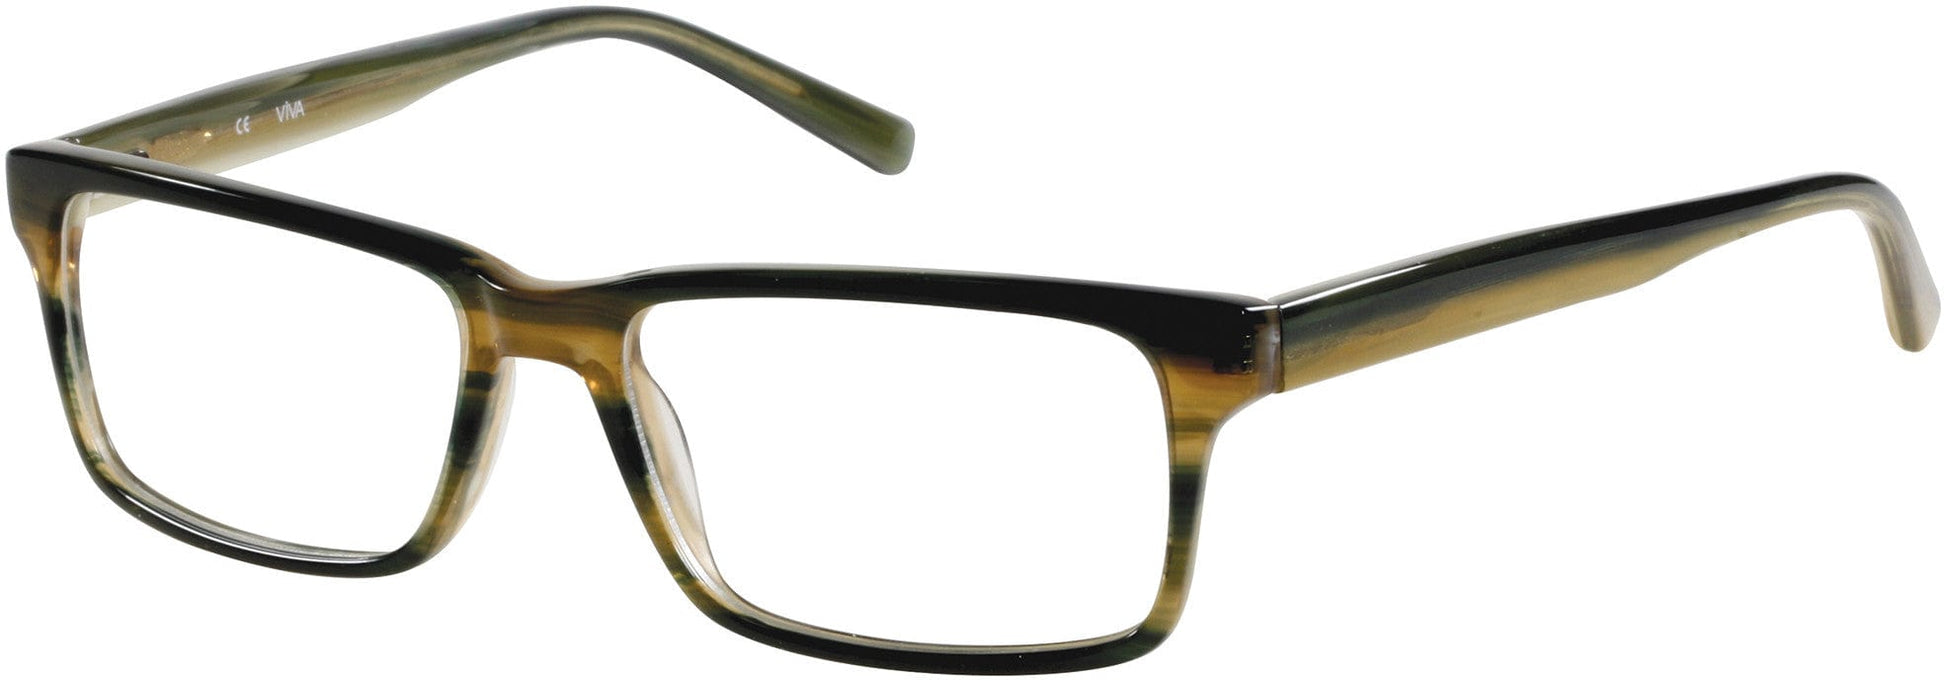 Viva VV0309 Eyeglasses M64-M64 - Olive